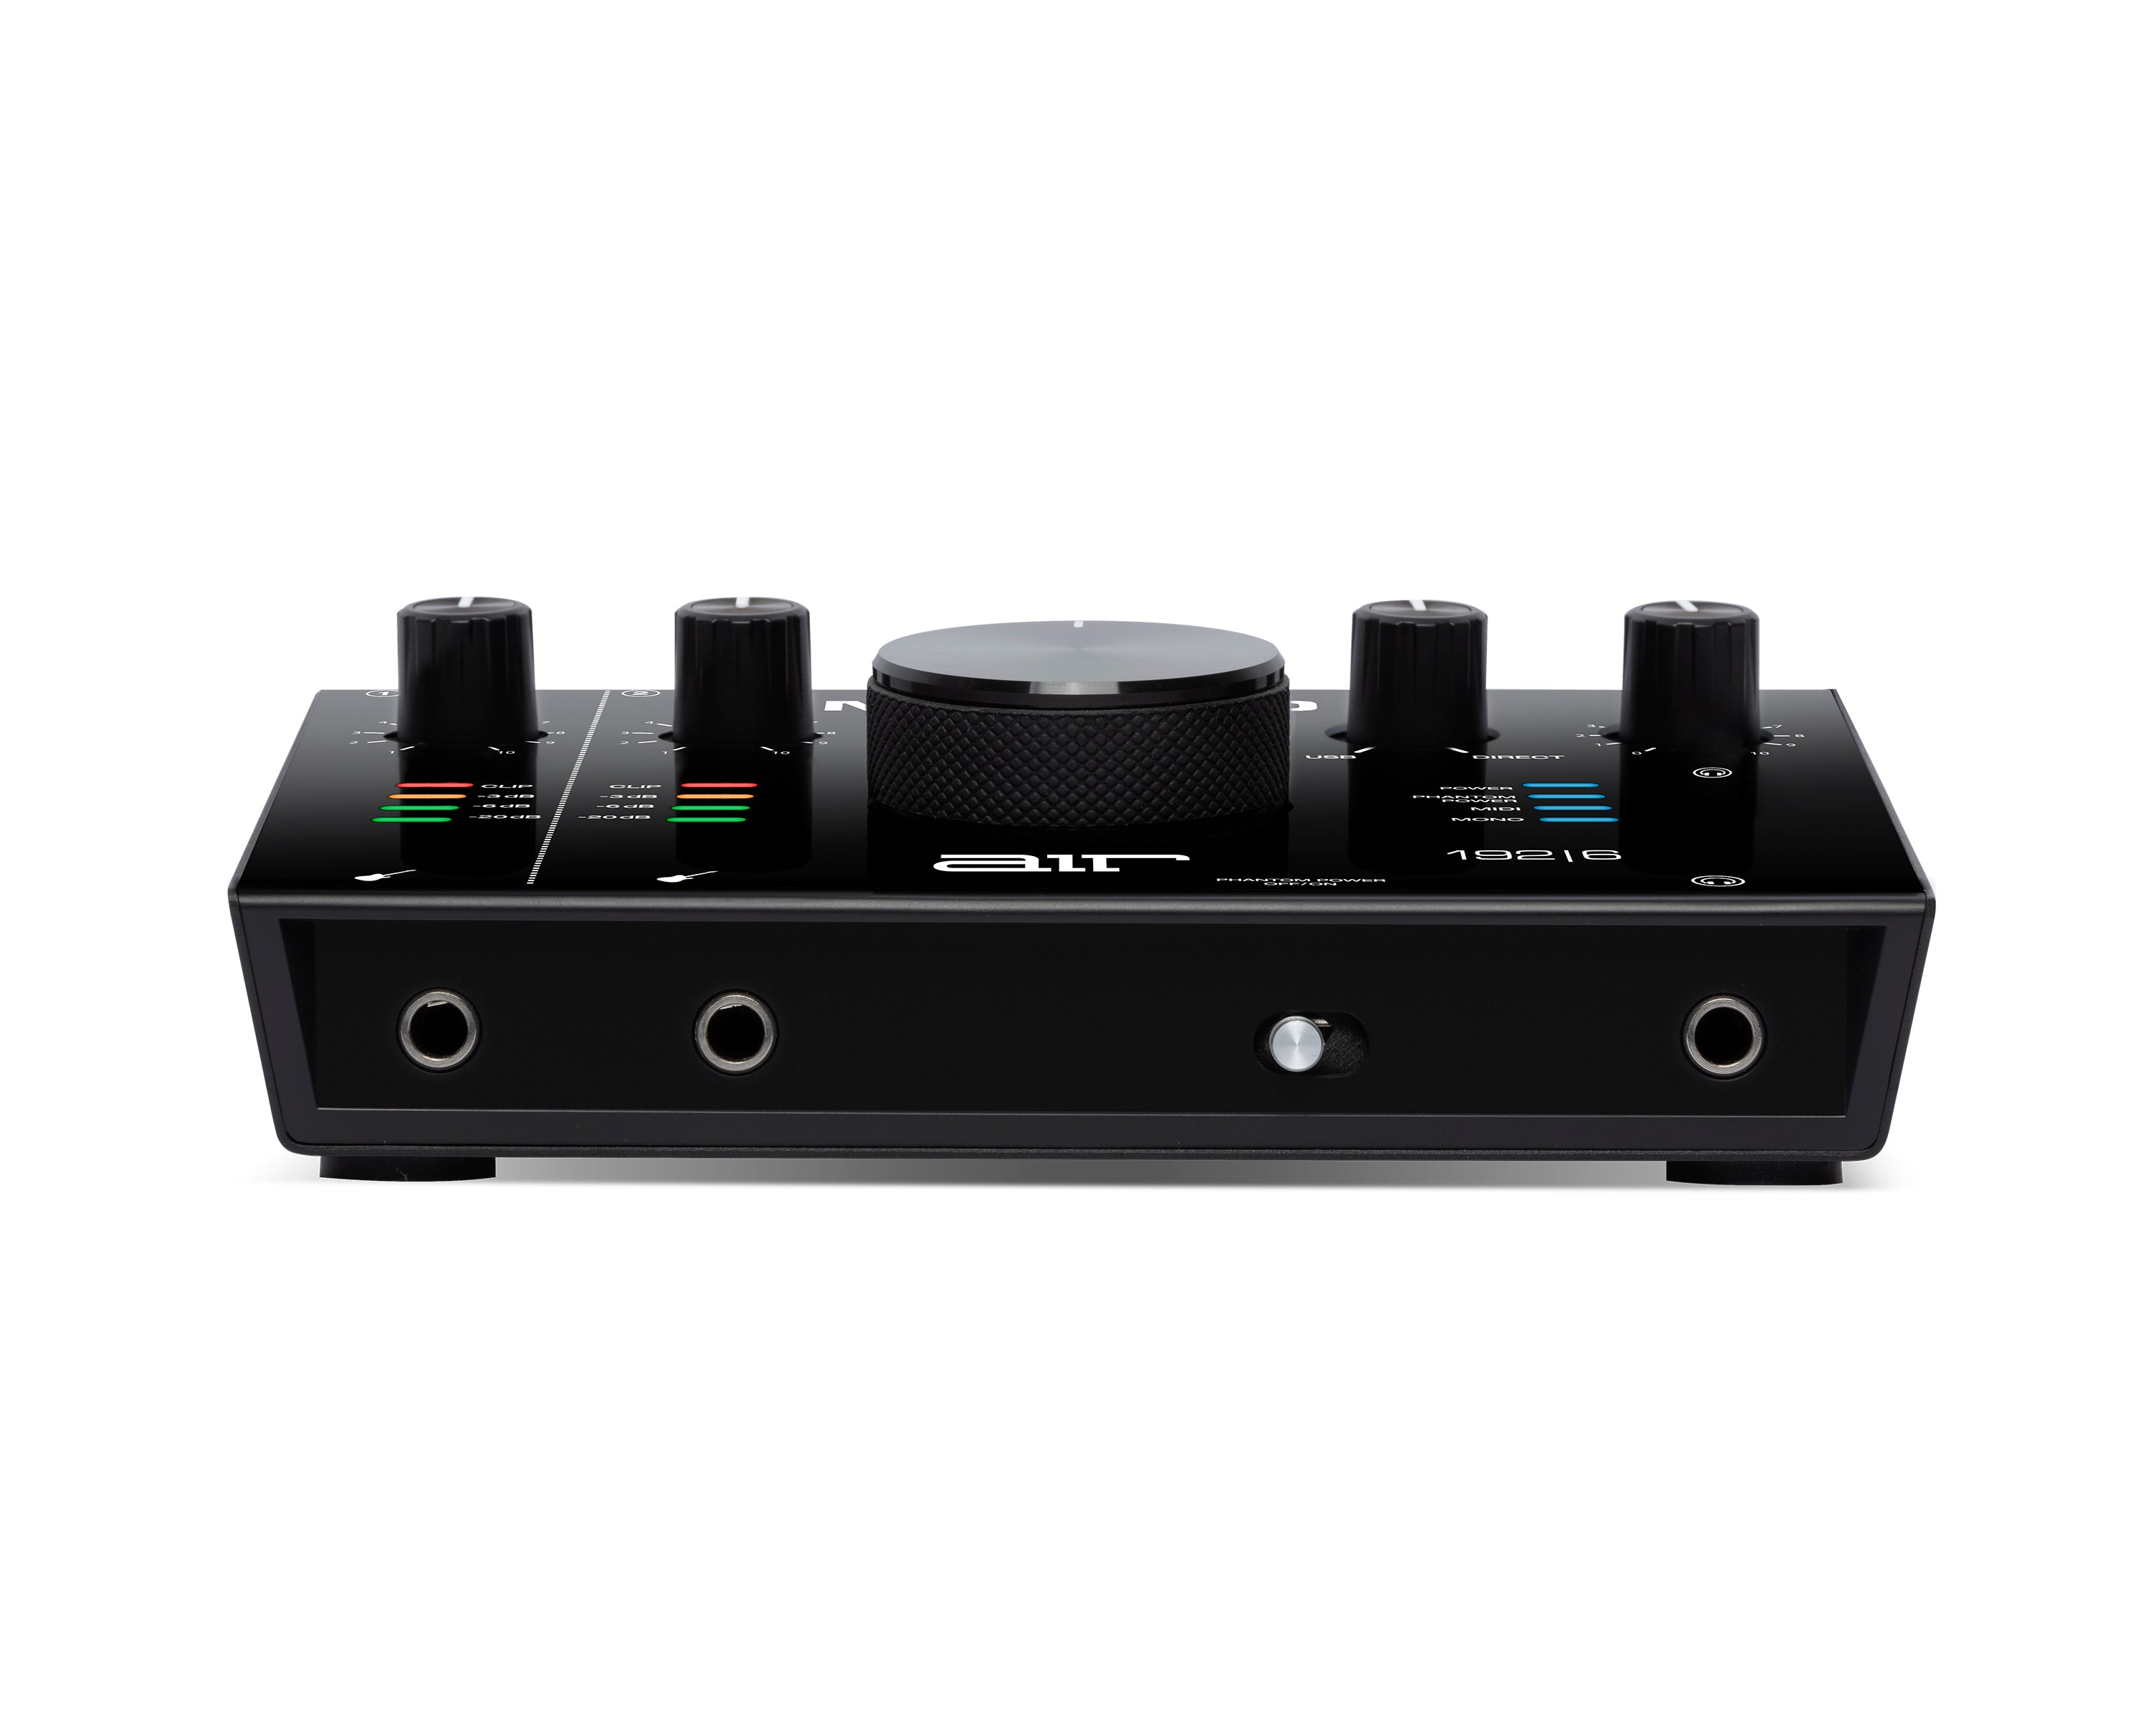 M-Audio AIR 192|6 USB C Audio Interface